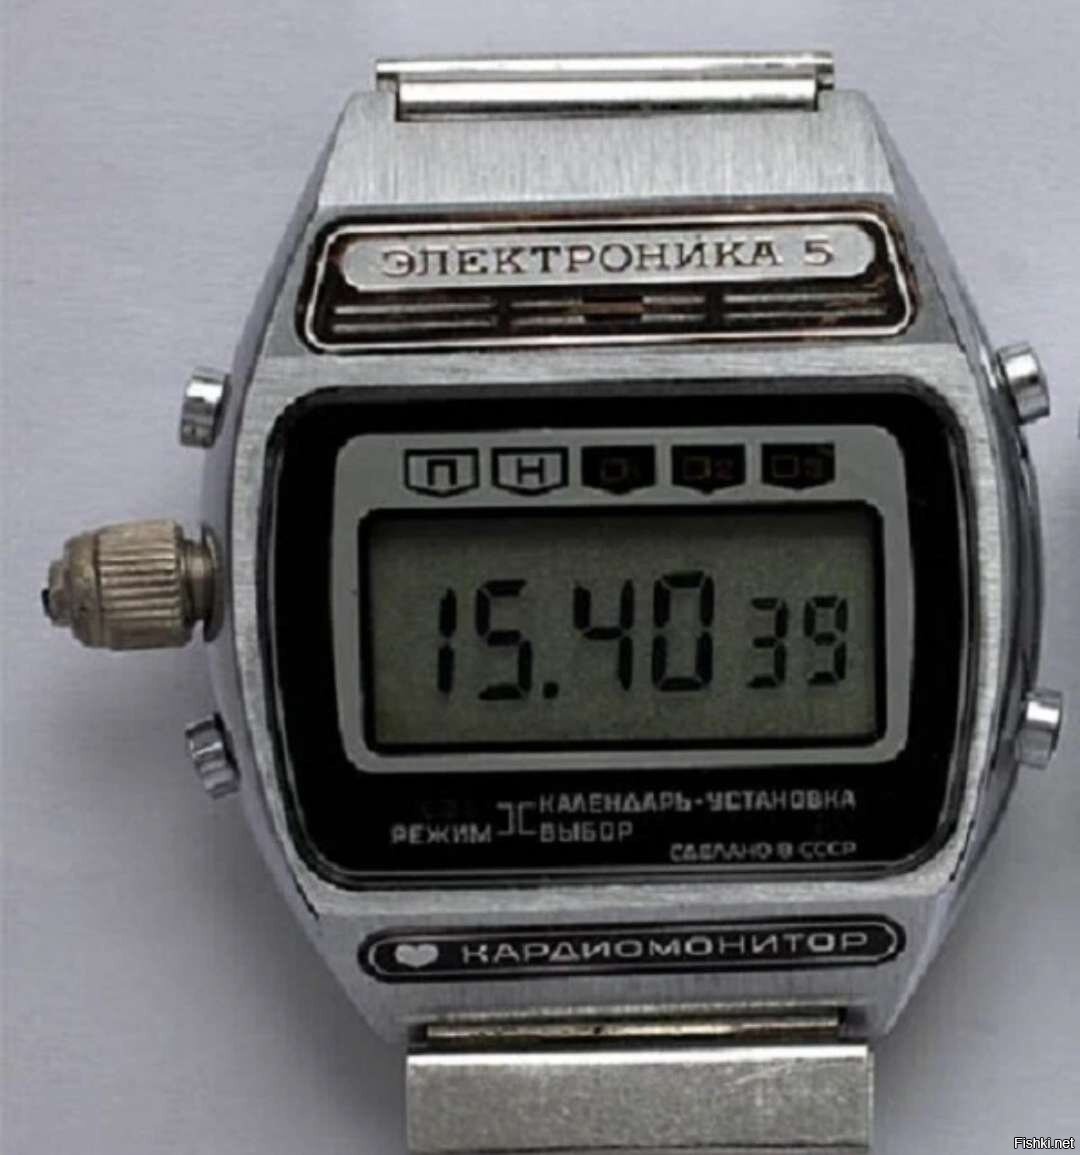 Unique feature. Электронные часы электроника 5 СССР. Часы электроника 2021. Наручные часы электроника 1203. Часы электроника б6-03.